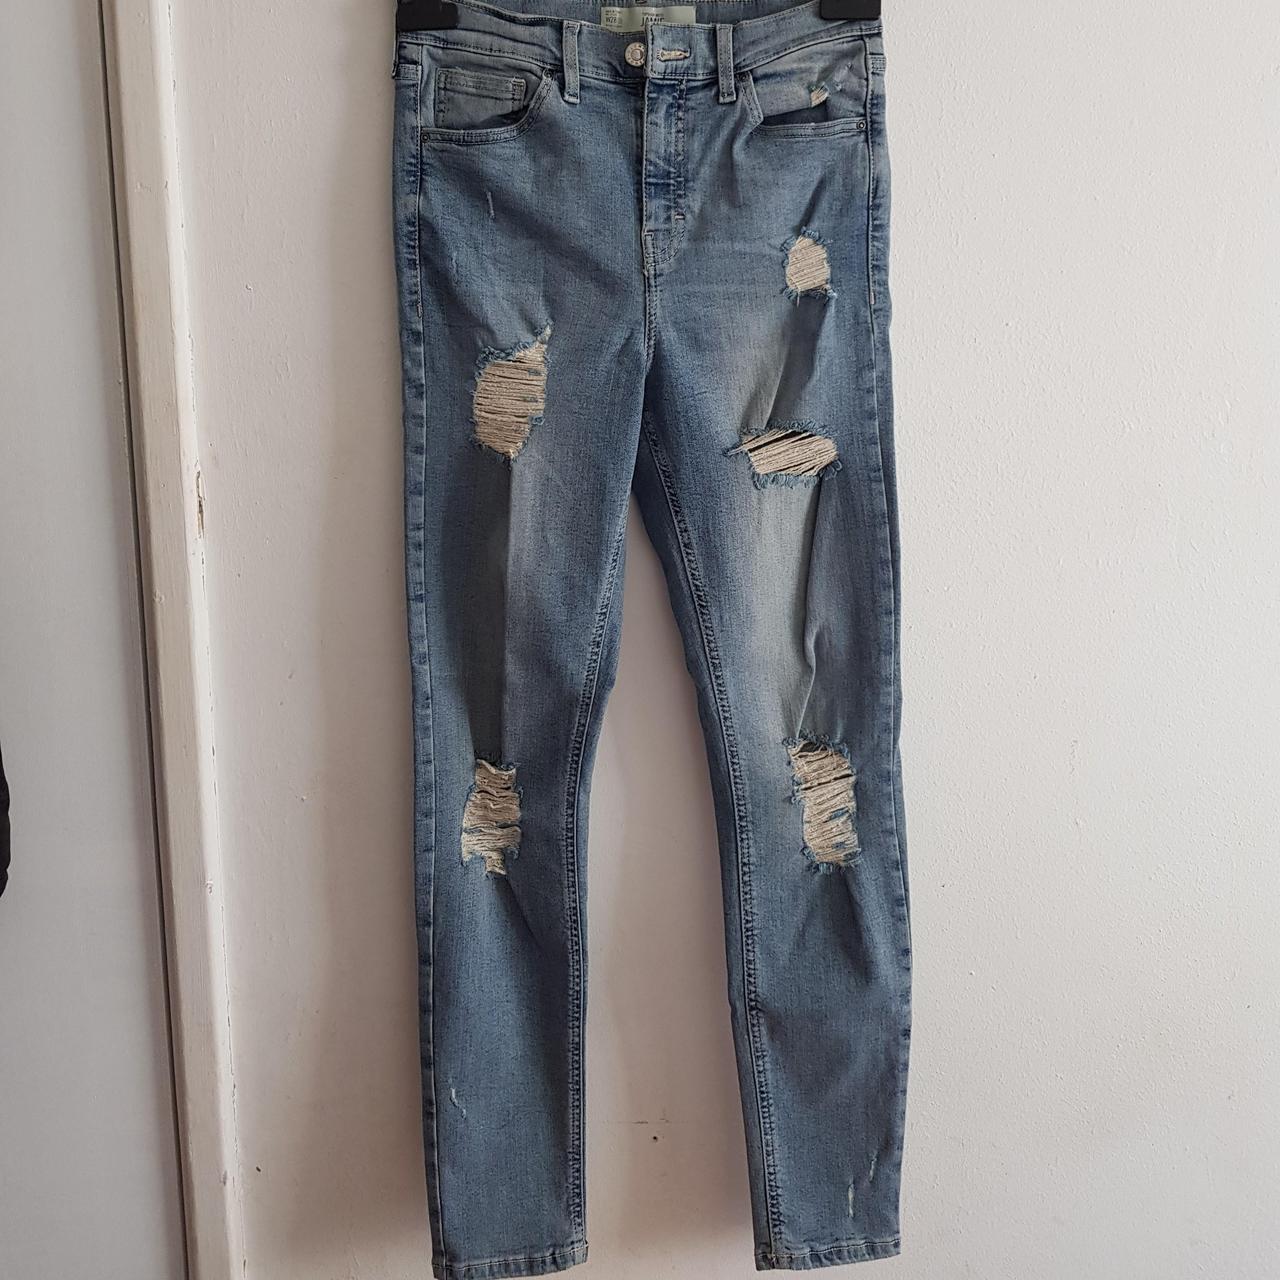 Washed Blue Ripped skinny Jean, W28, L32 #jeans... - Depop